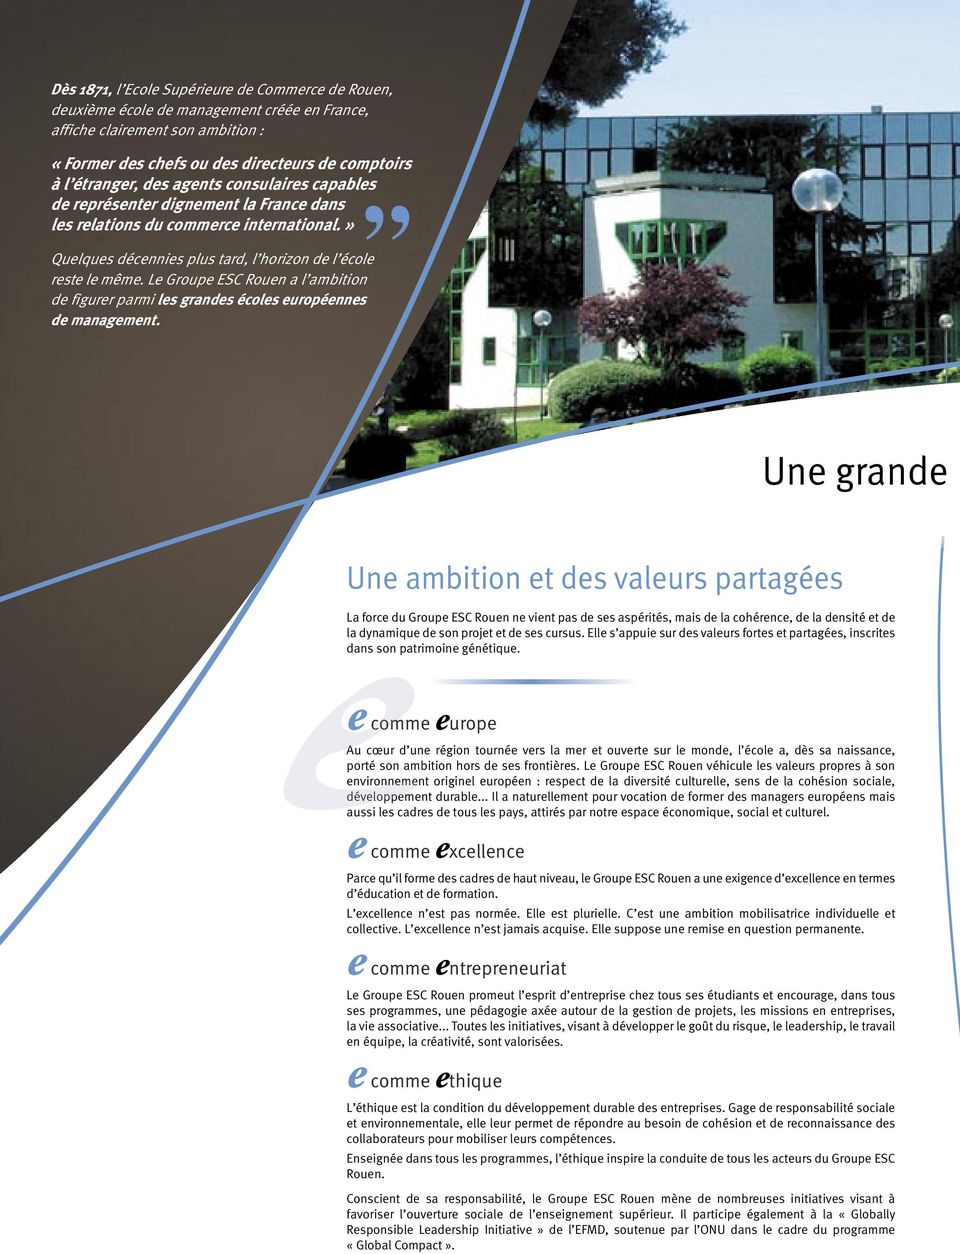 Le Groupe ESC Rouen a l ambition de figurer parmi les grandes écoles européennes de management.